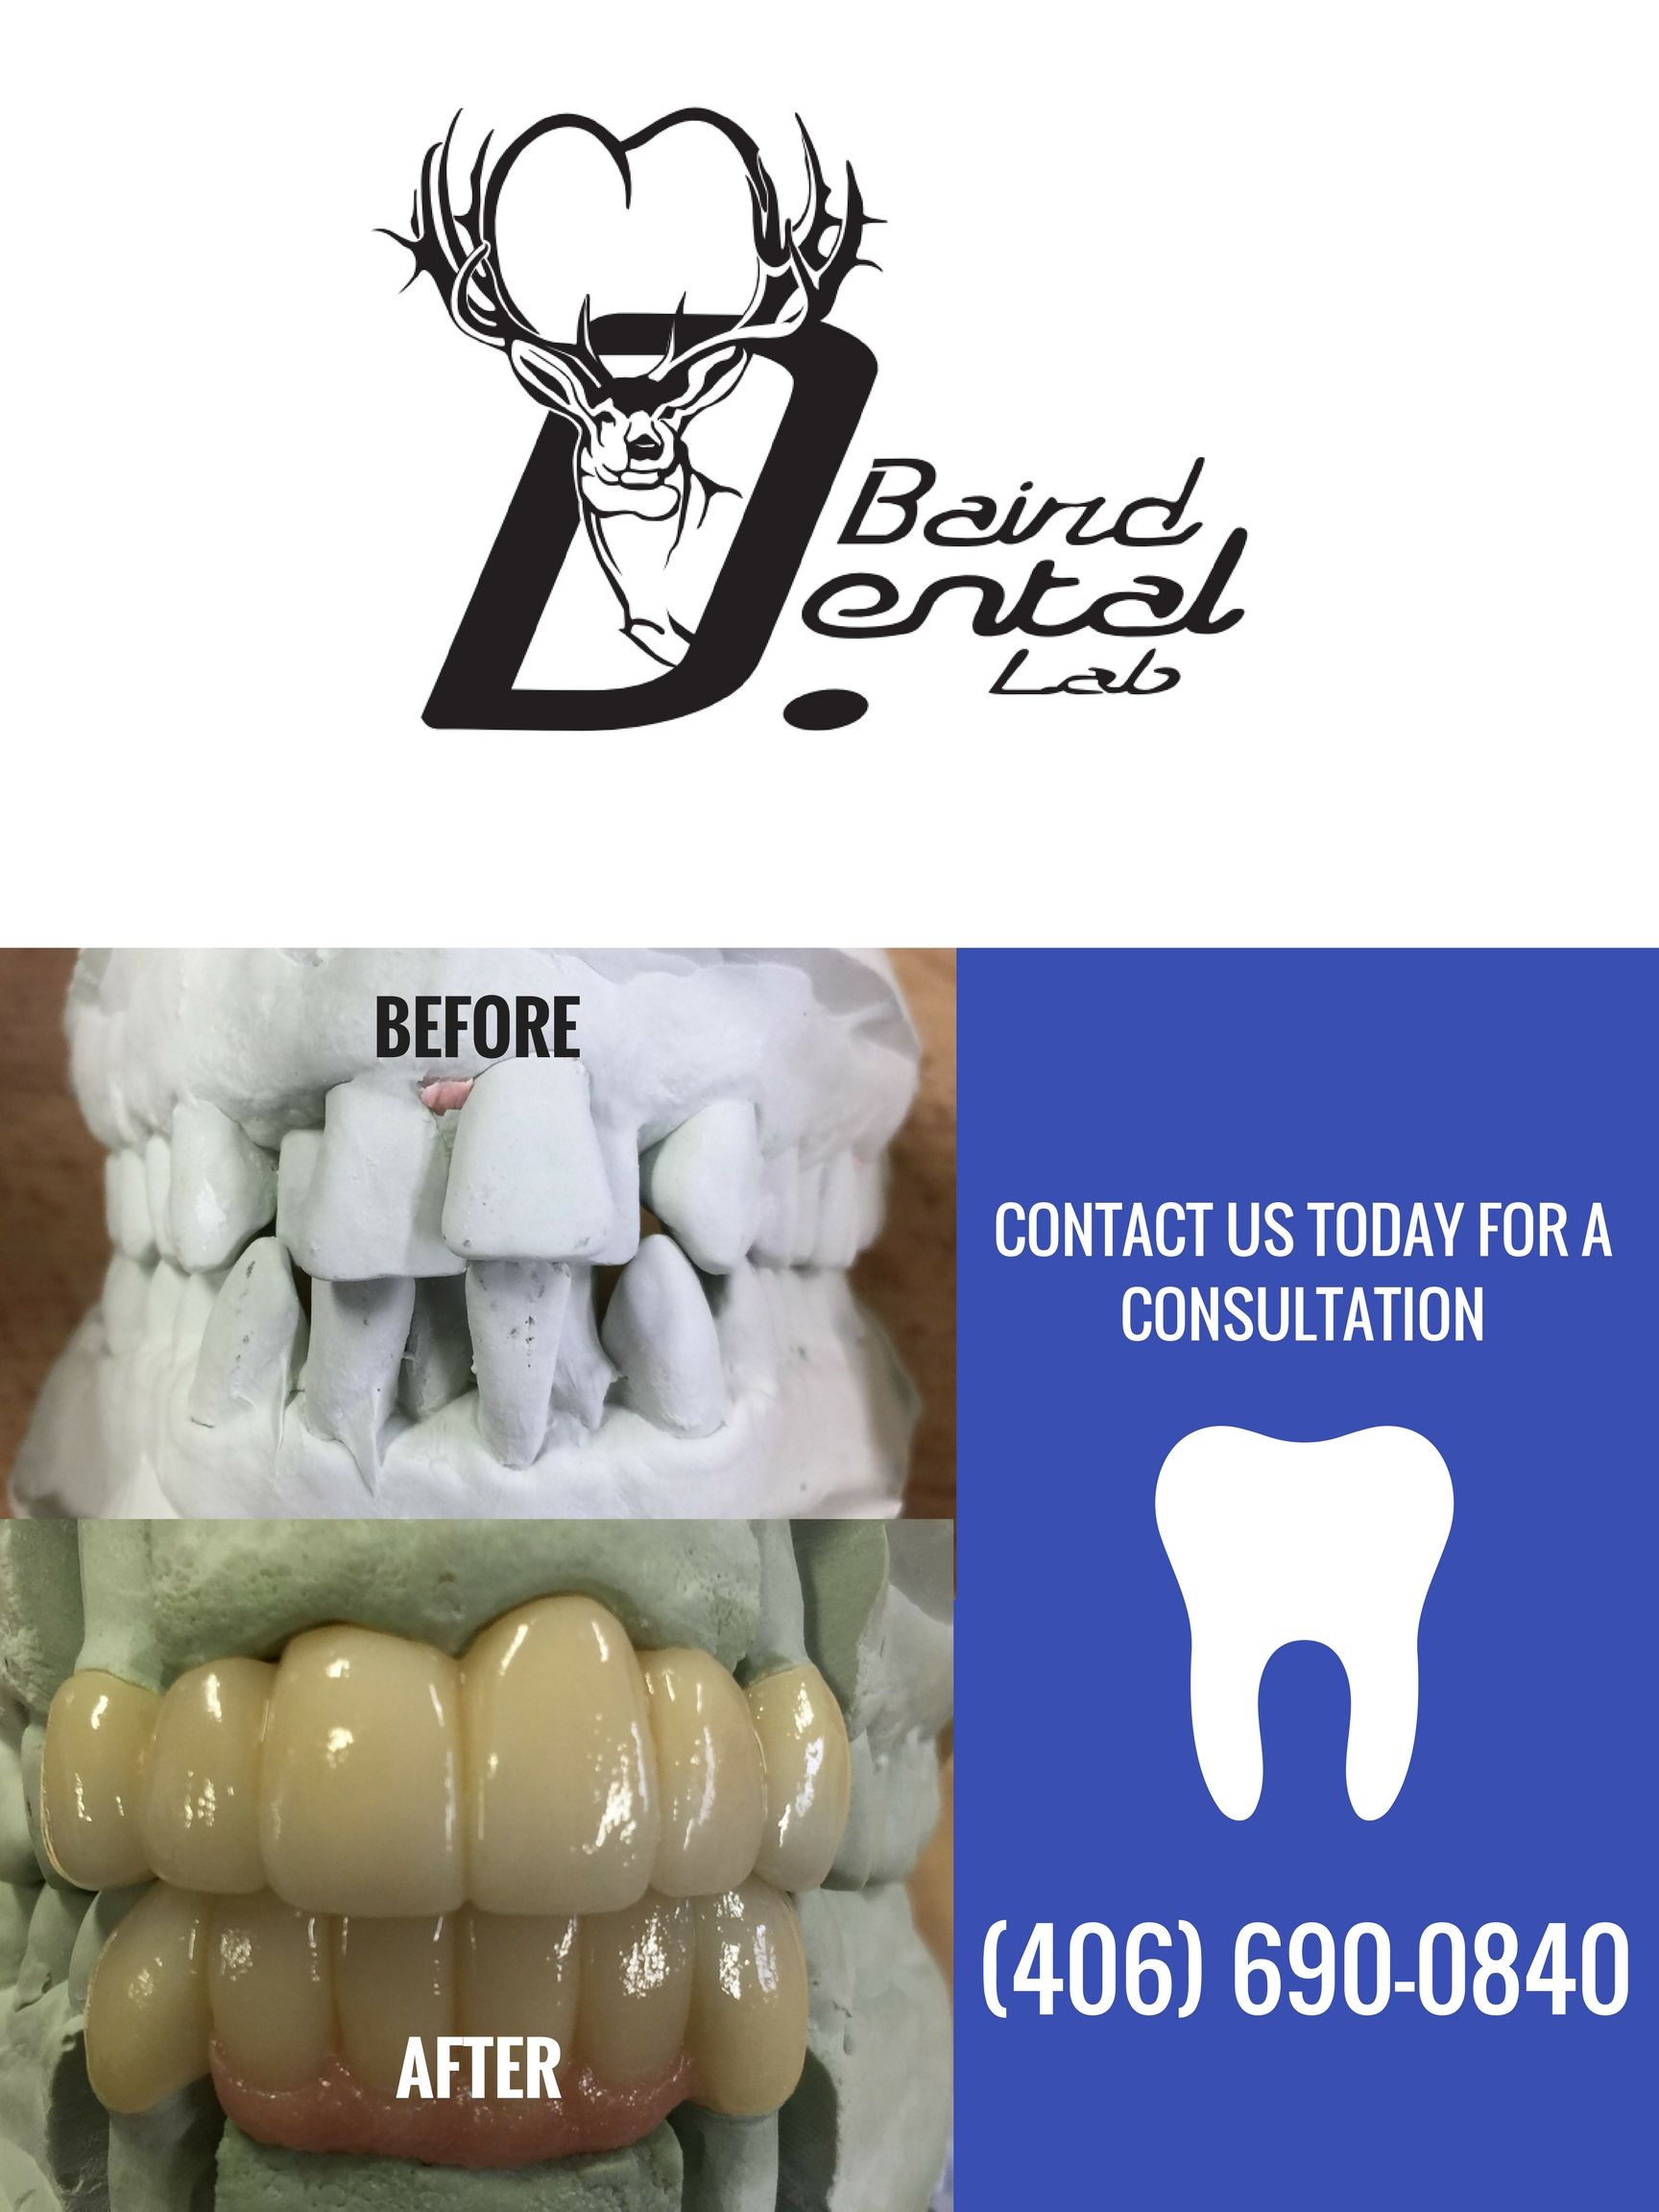 Dental Lab Crowns Dental Bridges Veneers Implants Denture Bruxzir Crowns Zirconia Crowns